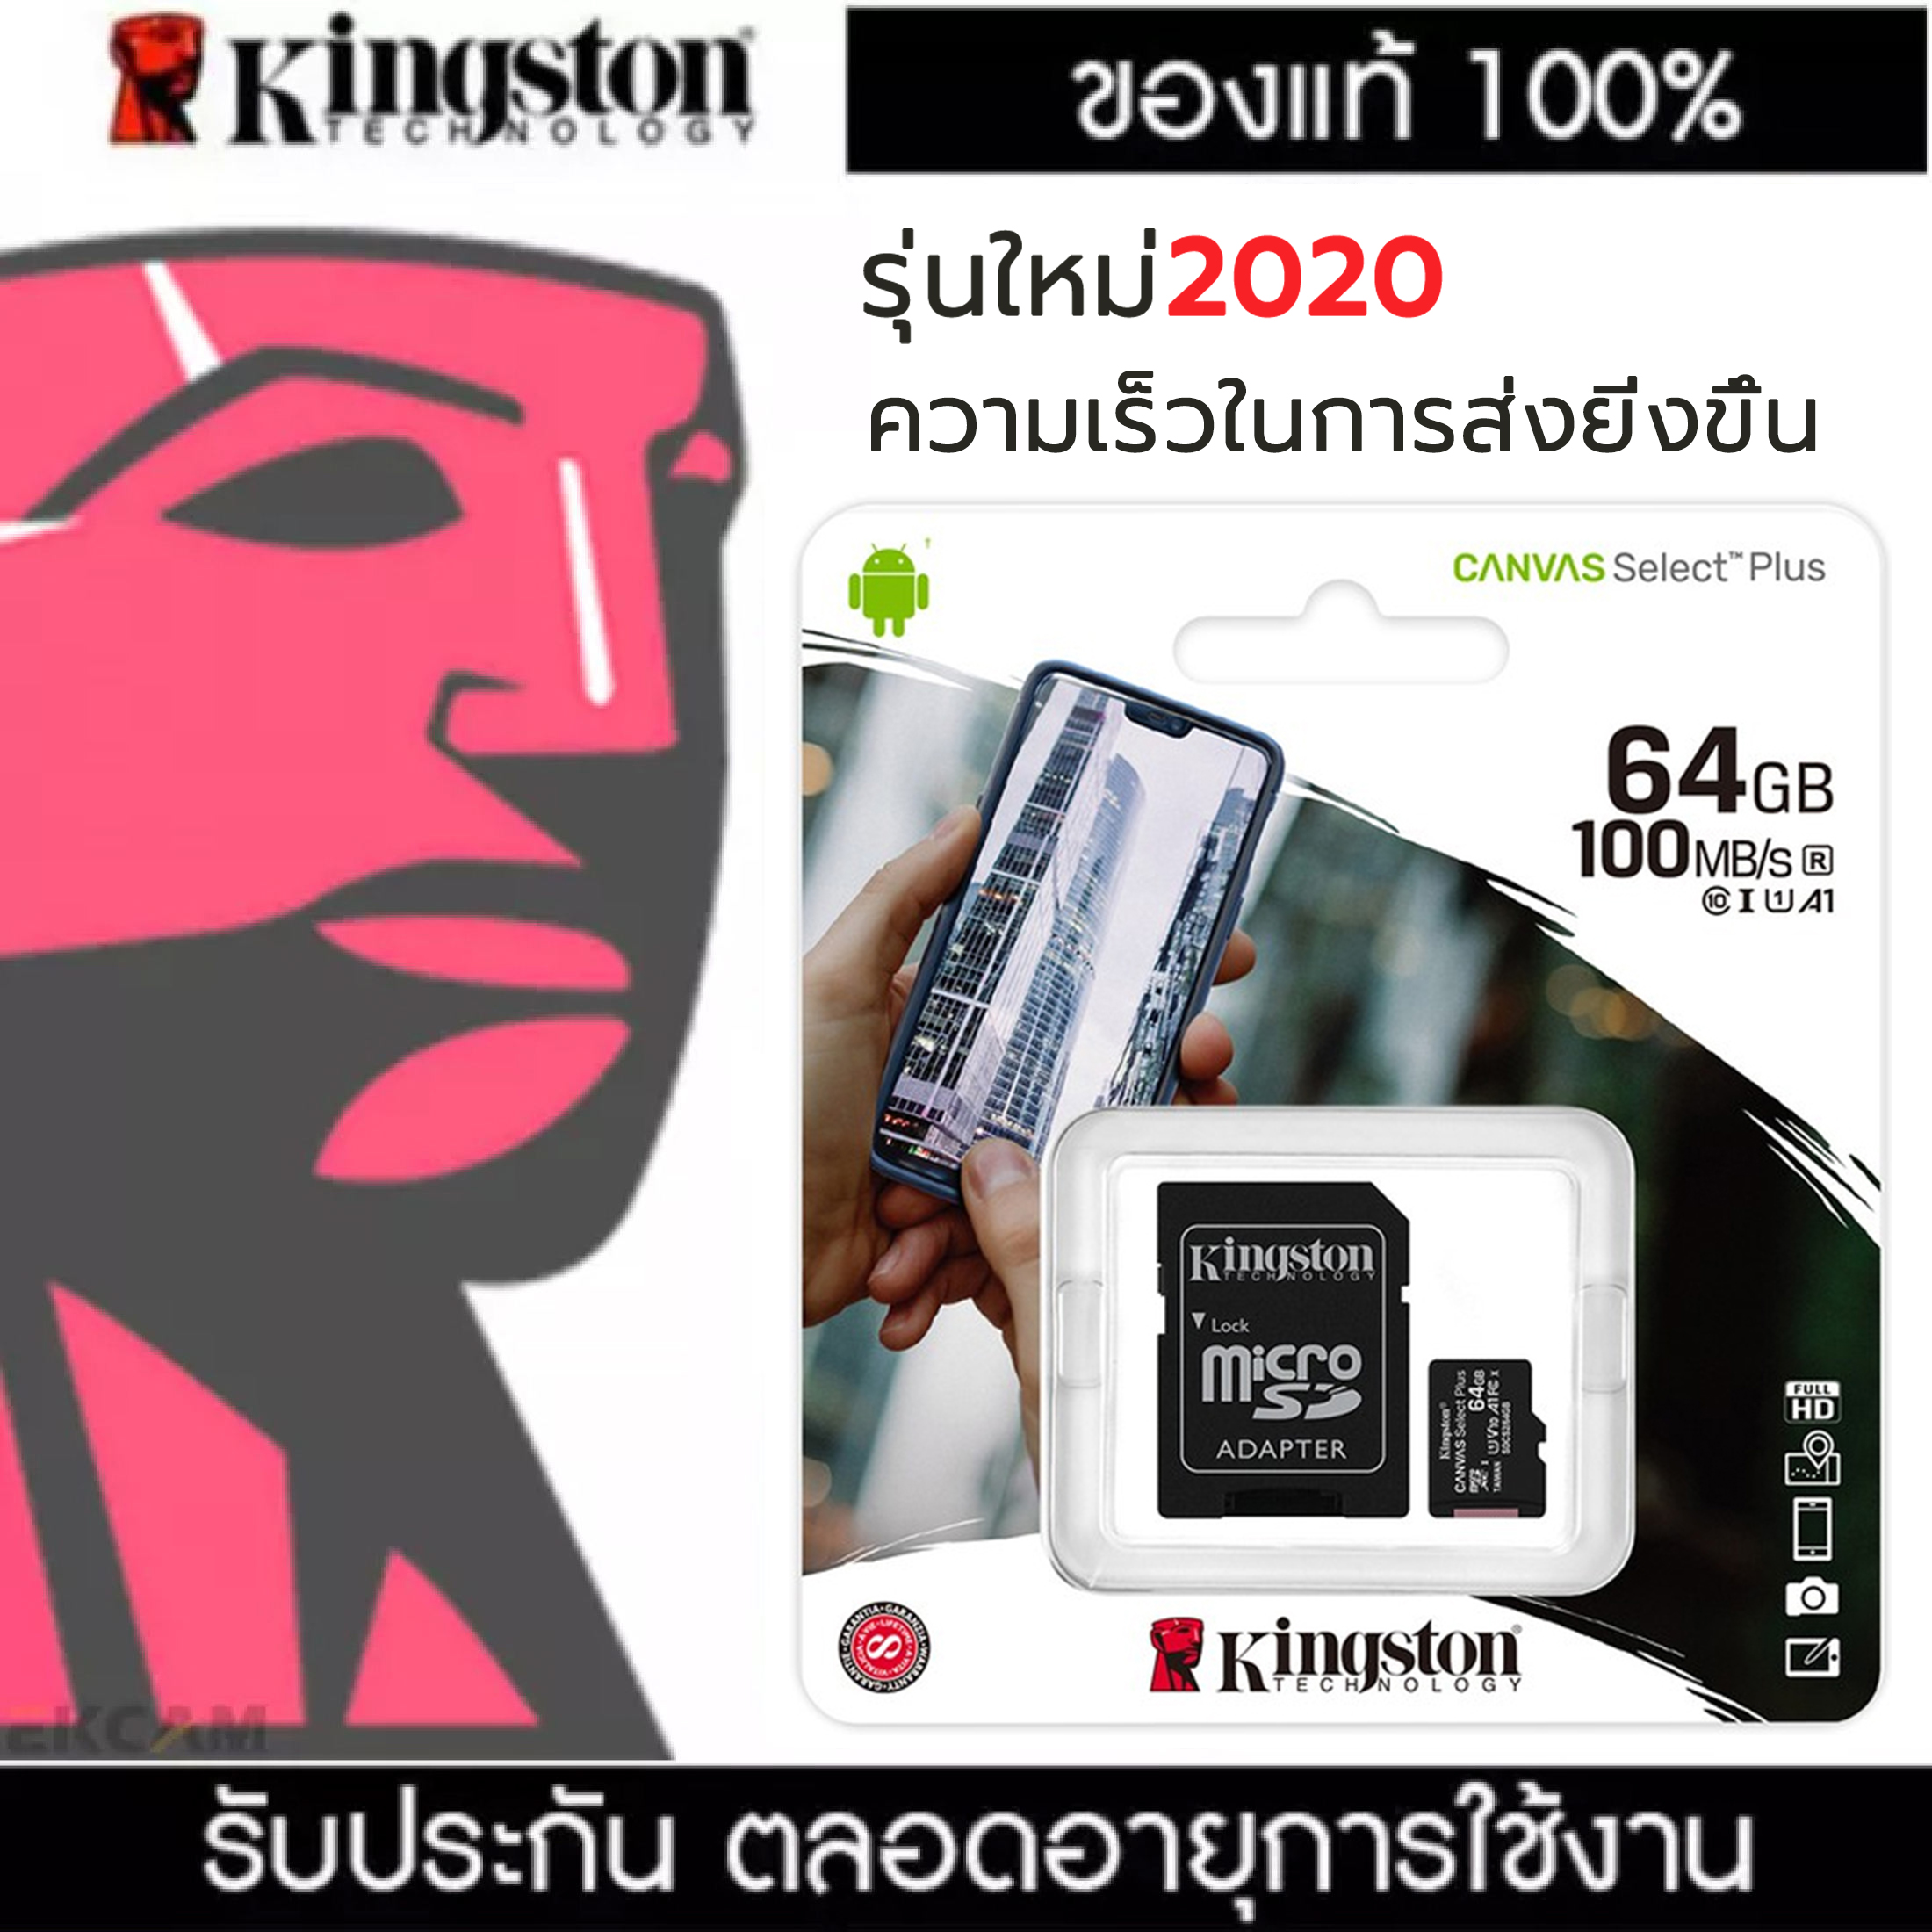 [แท้ พร้อมส่ง] Kingston Micro SD Card เมมโมรี่การ์ด แท้ 16/32/64GB รุ่น Canvas Select Plus รับประกันตลอดชีพ Life Time Warranty